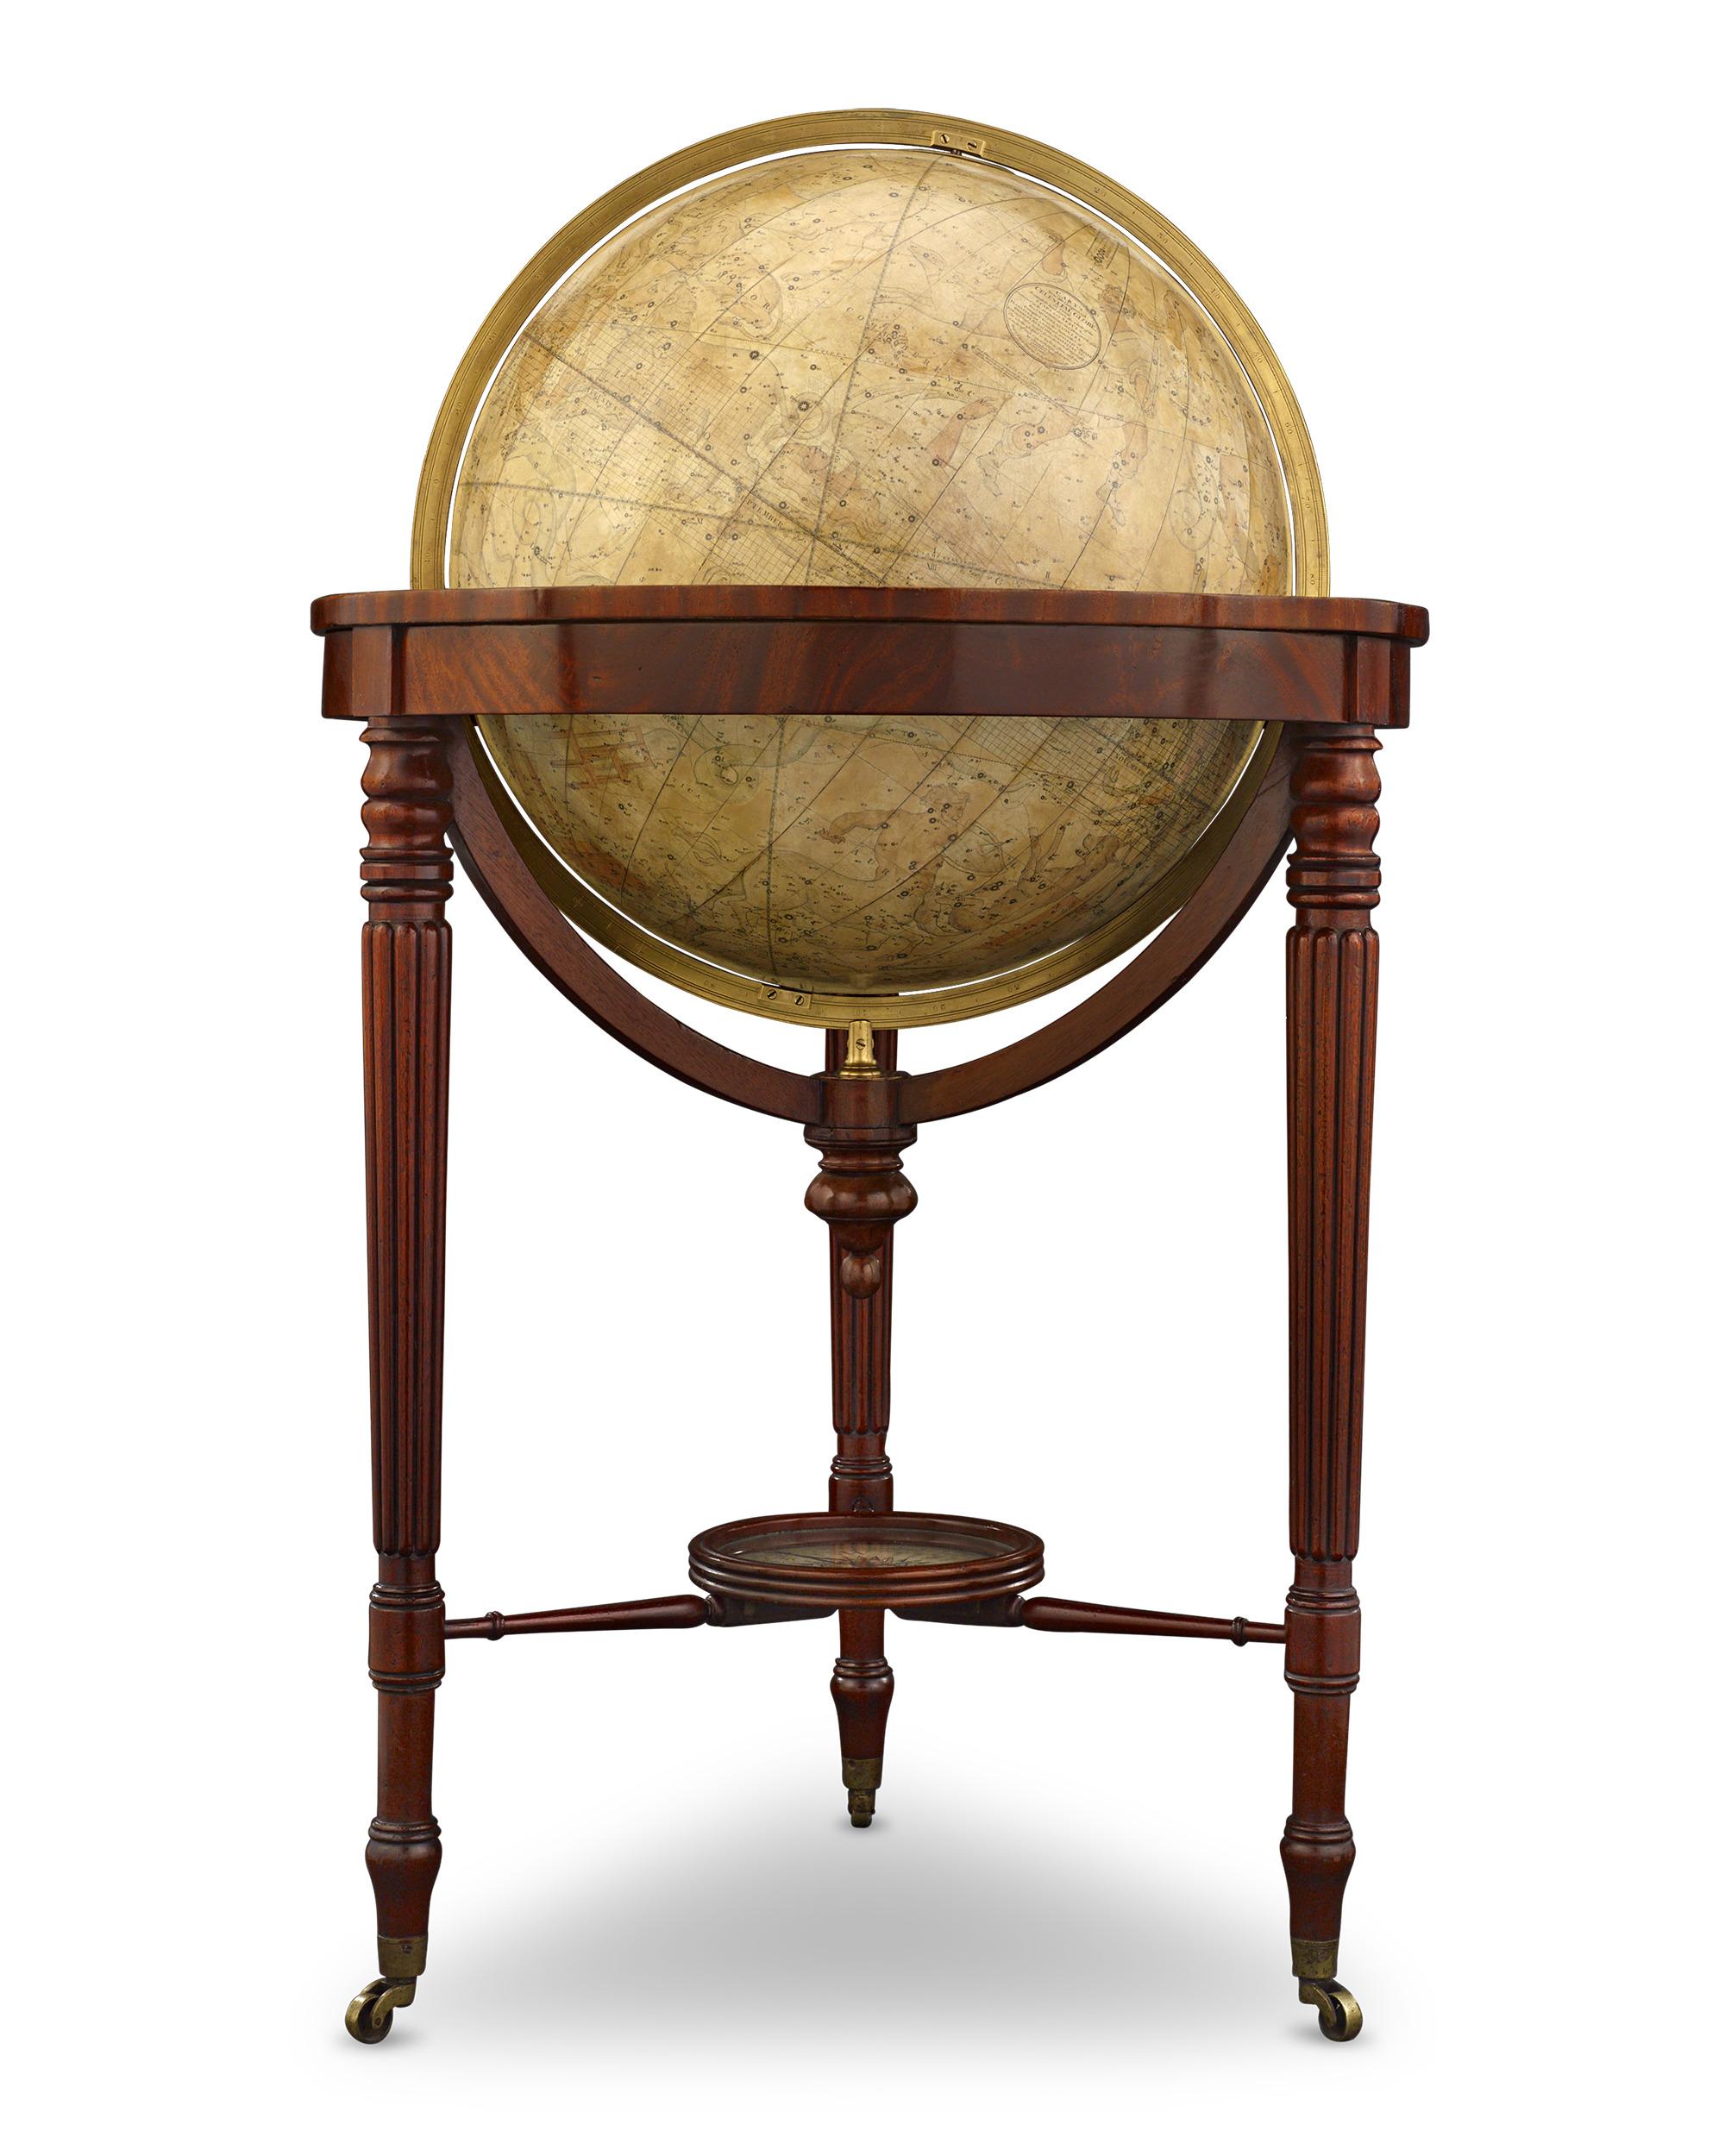 Cette paire majestueuse de globes terrestres et célestes William IV a été fabriquée par l'entreprise de cartographie réputée J. & W. Cary, exhalant l'essence de l'élégance de la fin de l'époque Régence. Au-delà de leur attrait visuel, ces cartes de